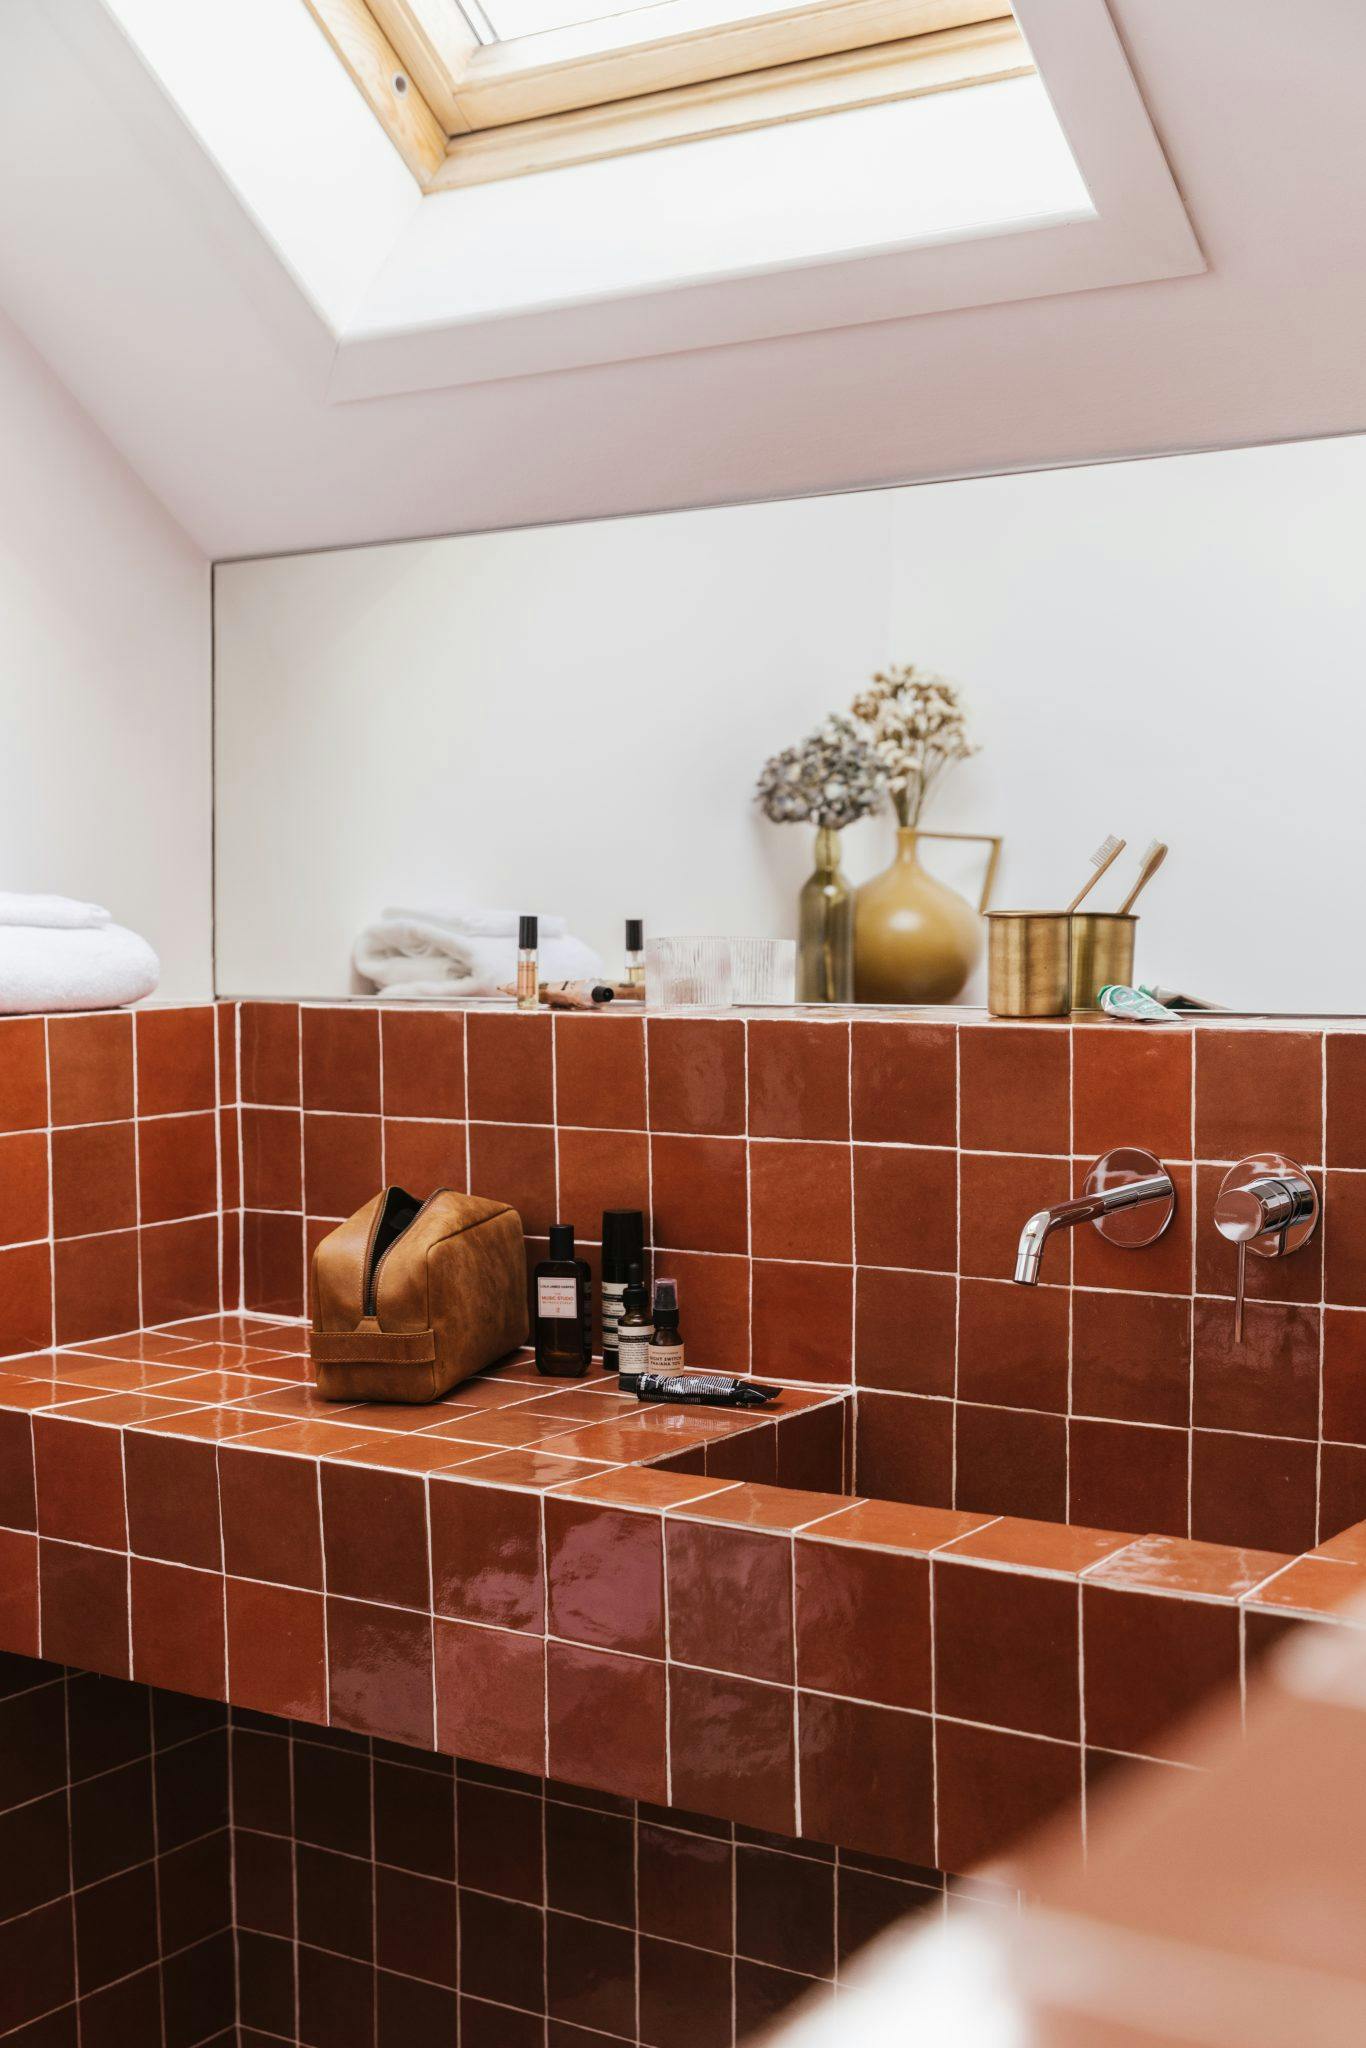 salle de bain à carreaux couleur brique